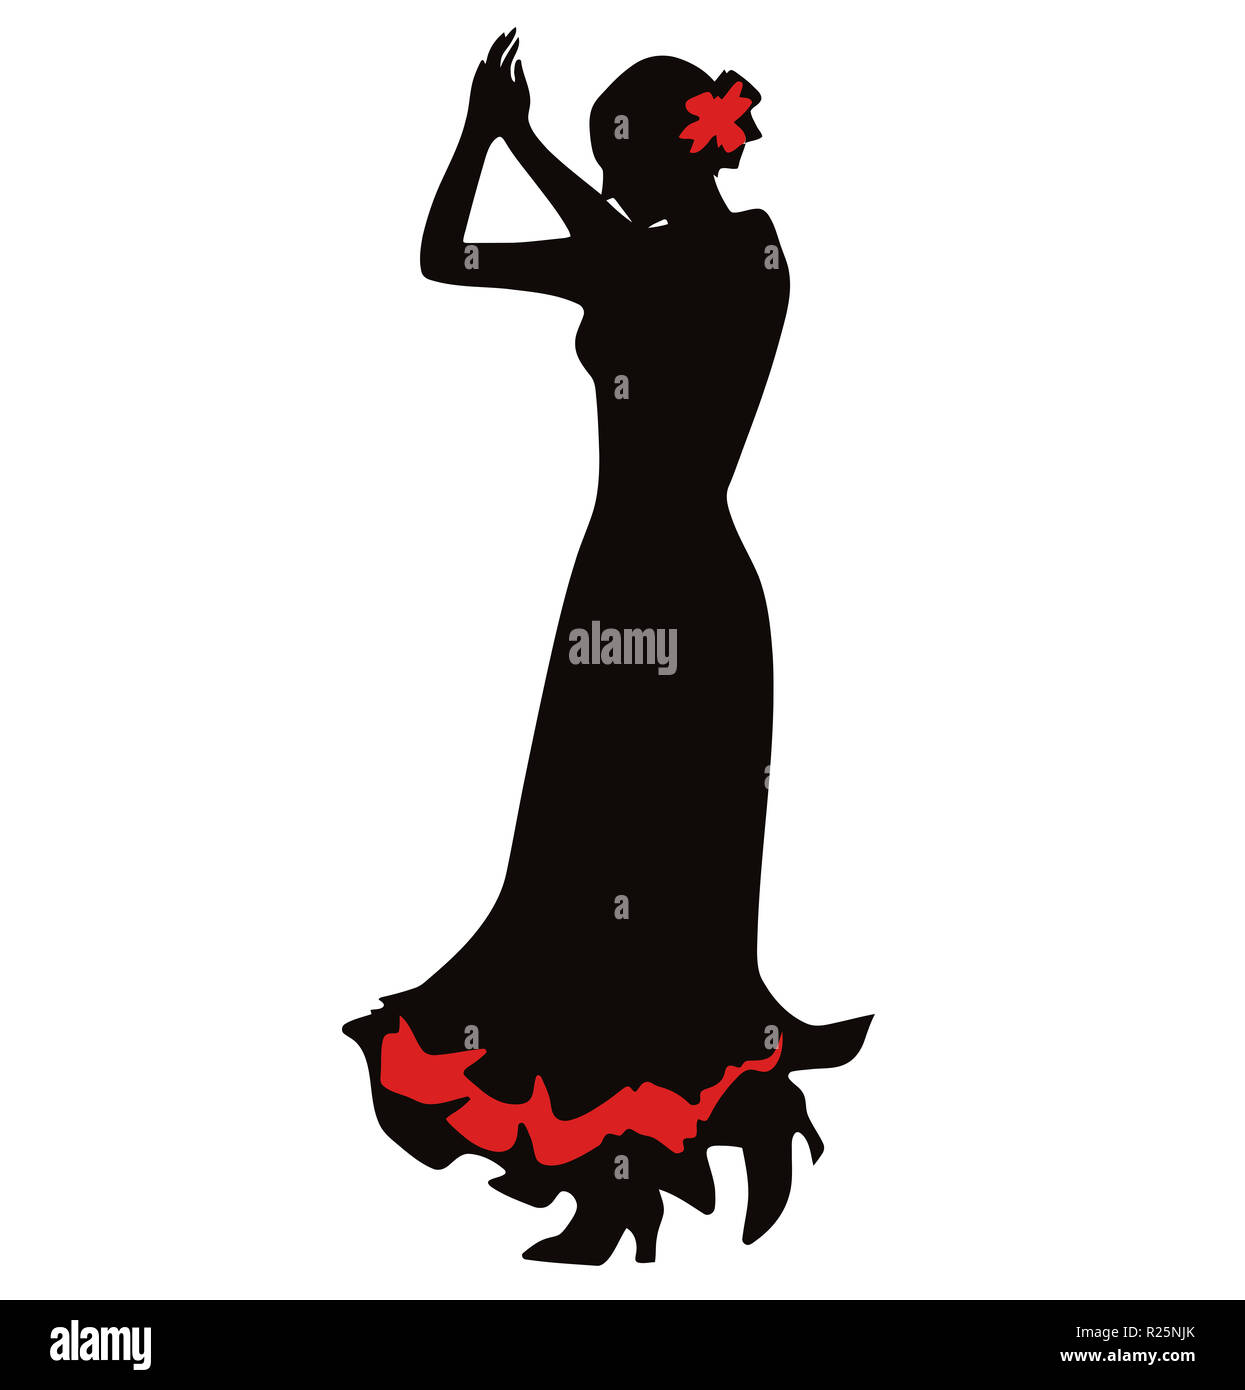 Espagne culture musique danse flamenco passion illustration silhouette de femme Banque D'Images